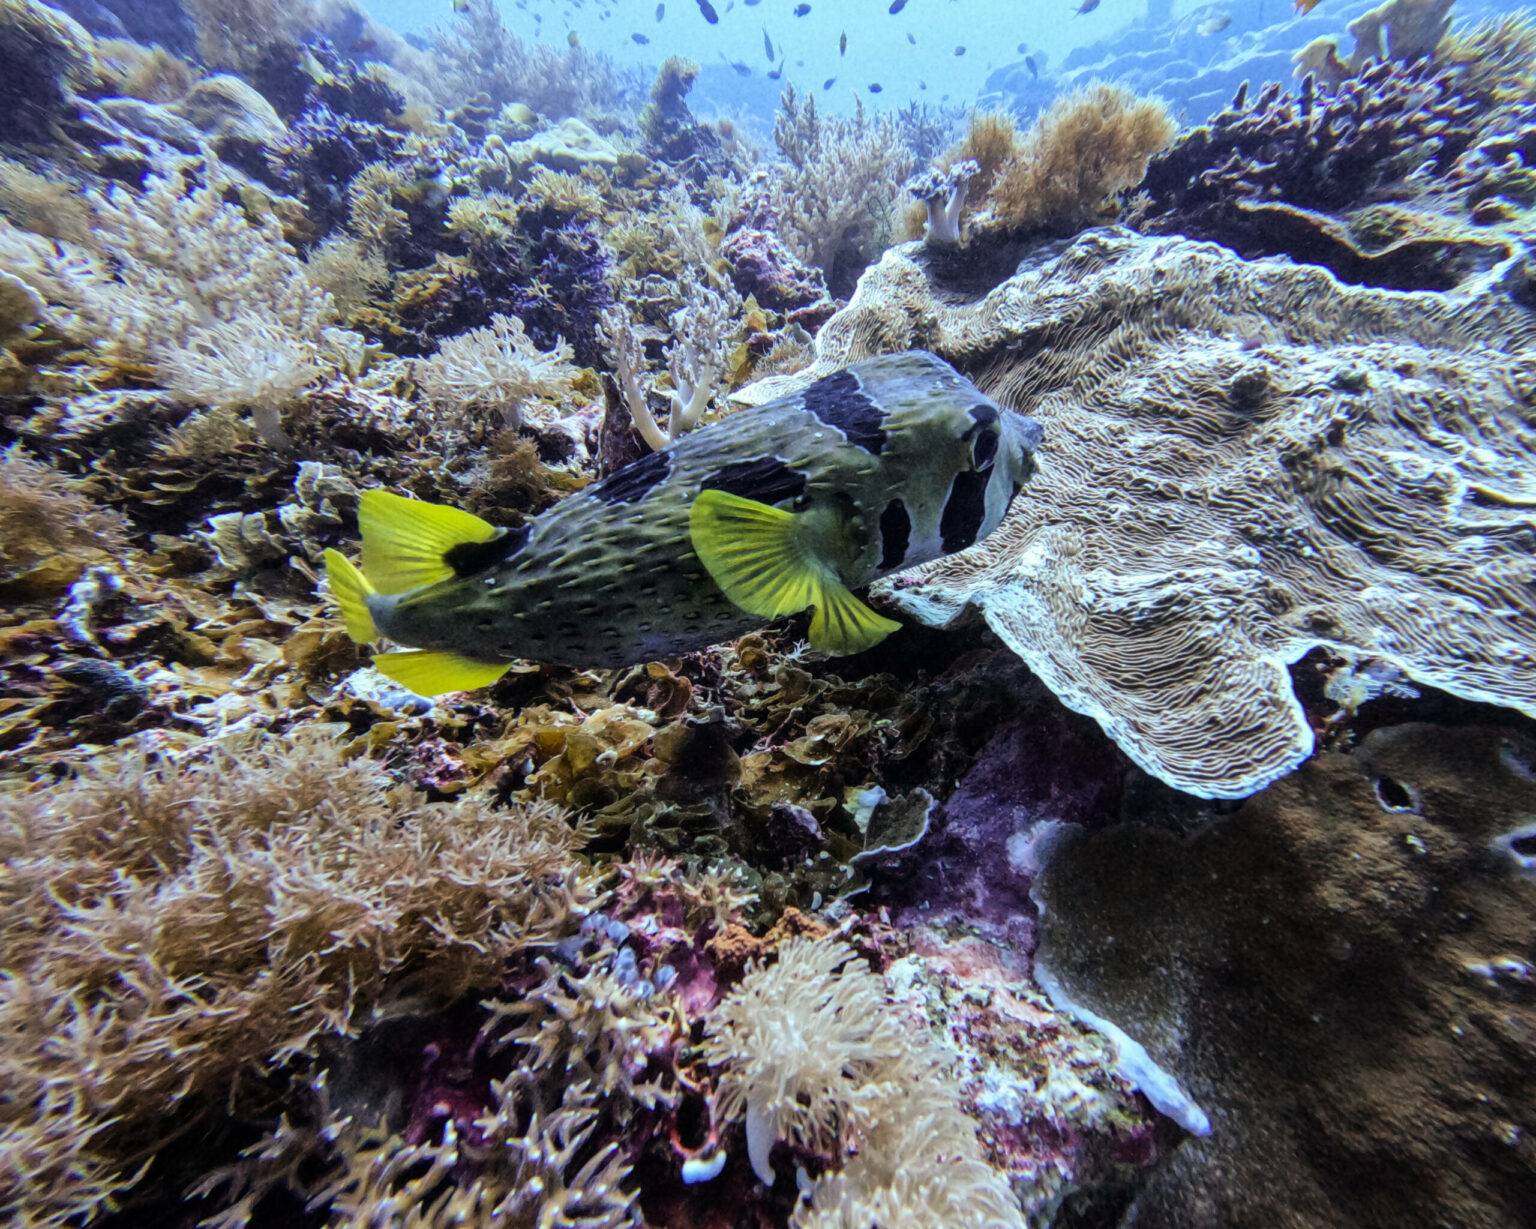 Zwischen den bunten Korallen verstecken sich zahlreiche bunte Fische im Riff.